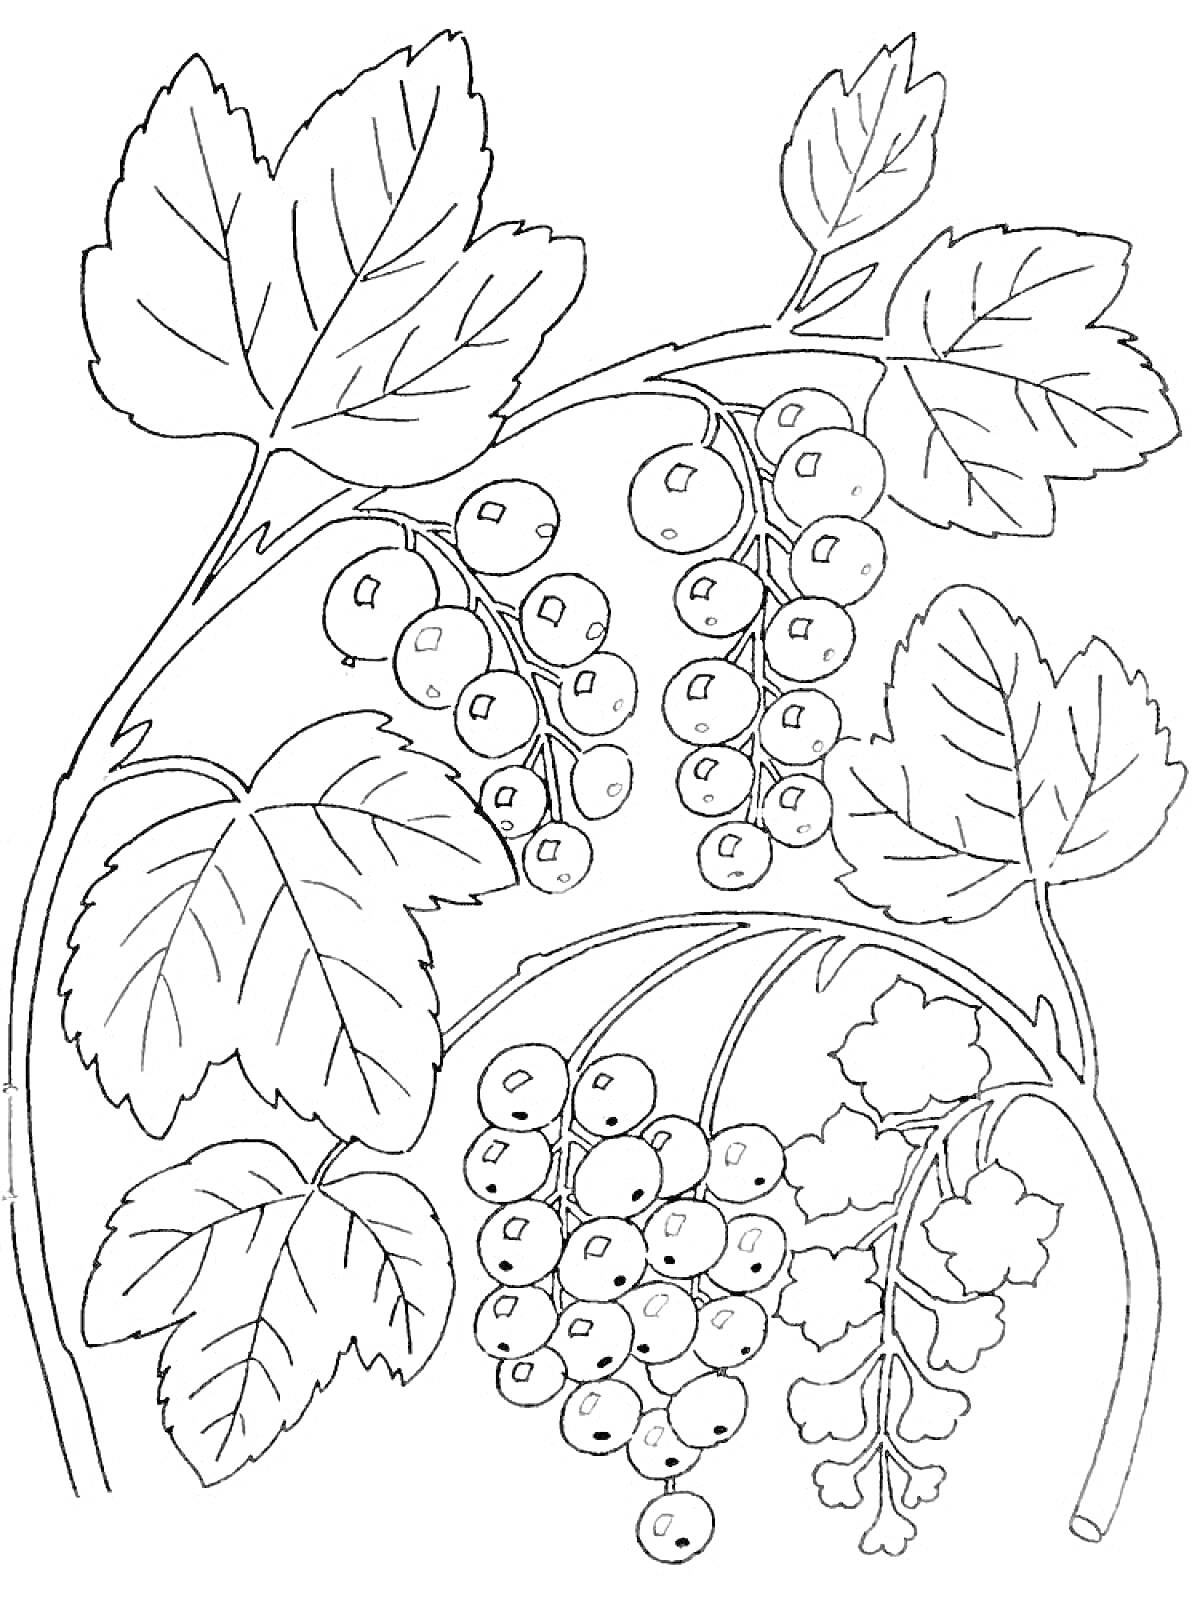  Ветви смородины с ягодами и листьями